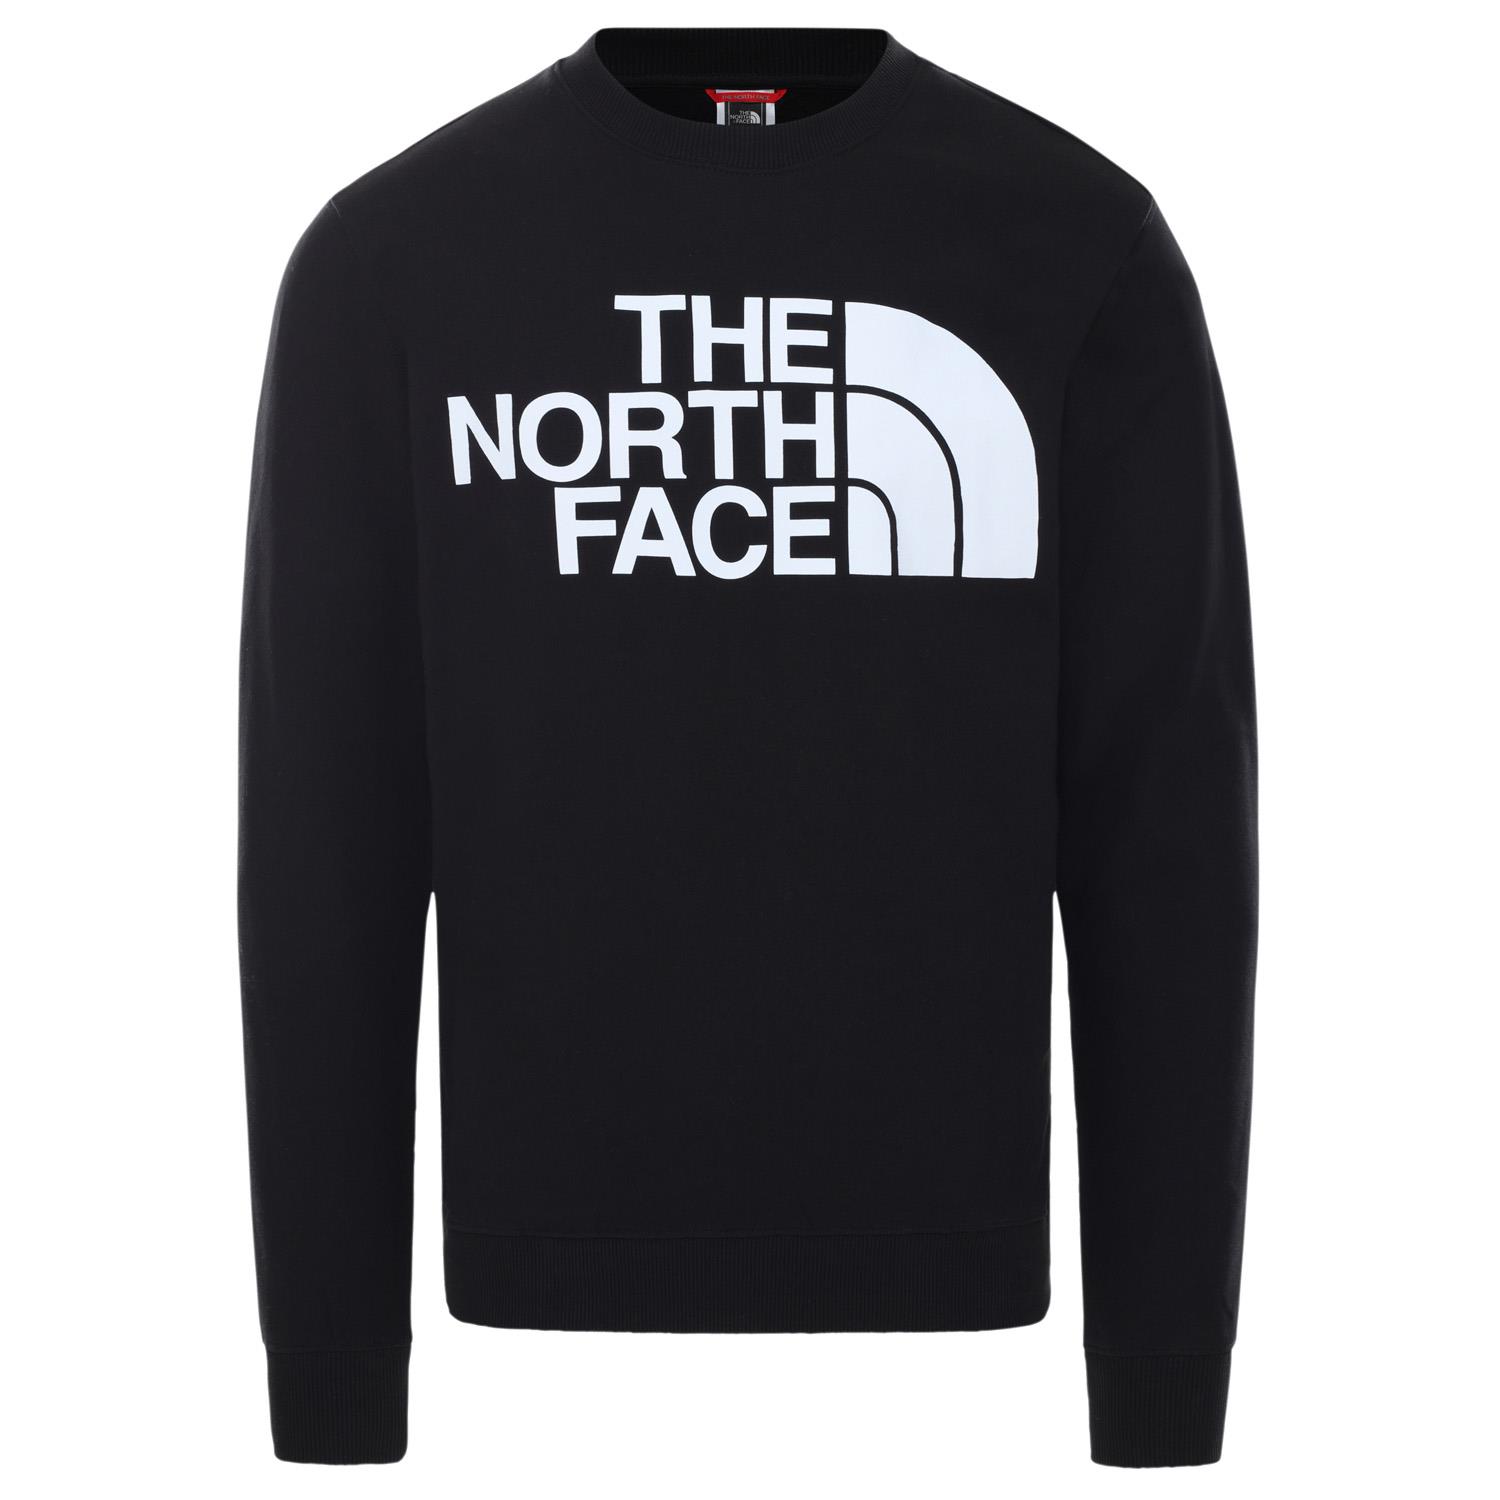  The North Face M STANDARD CREW - EU Erkek Sweat Shirt  NF0A4M7WJK31